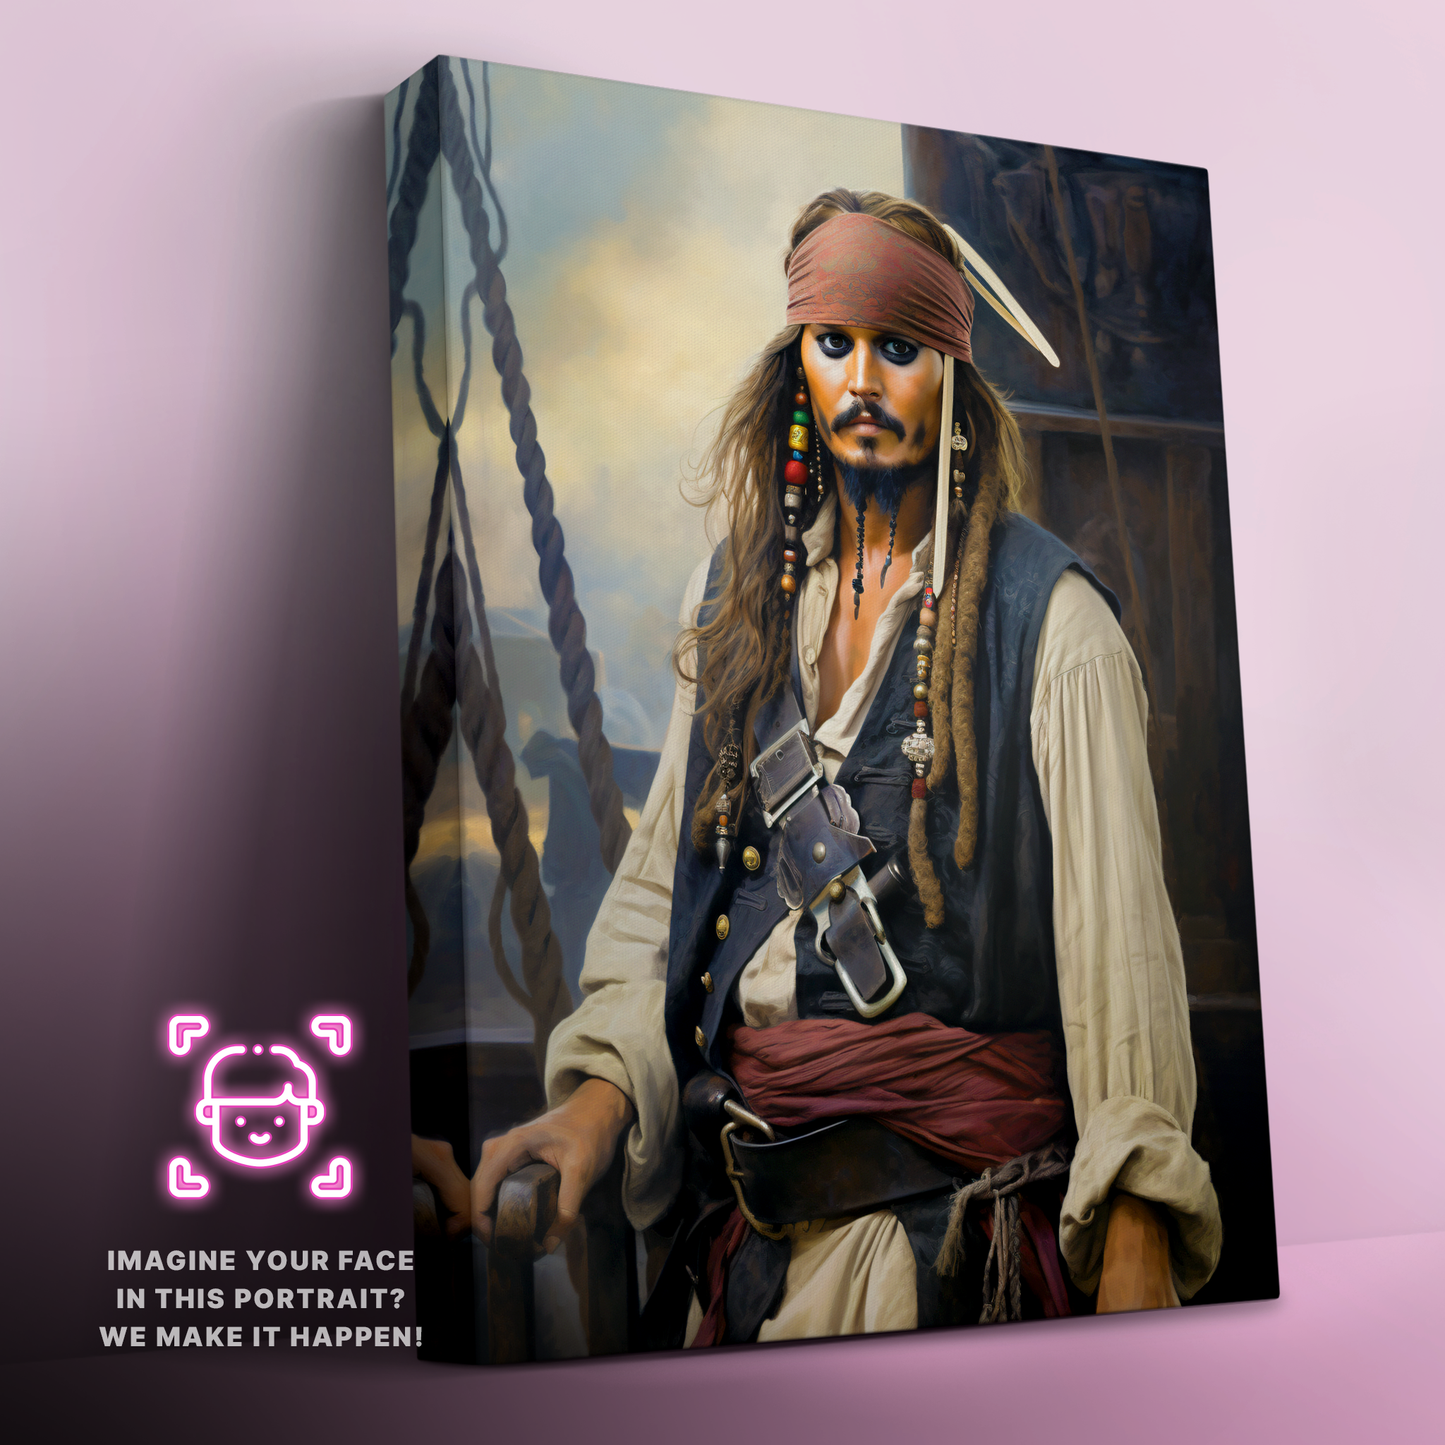 The Eccentric Pirate Captain